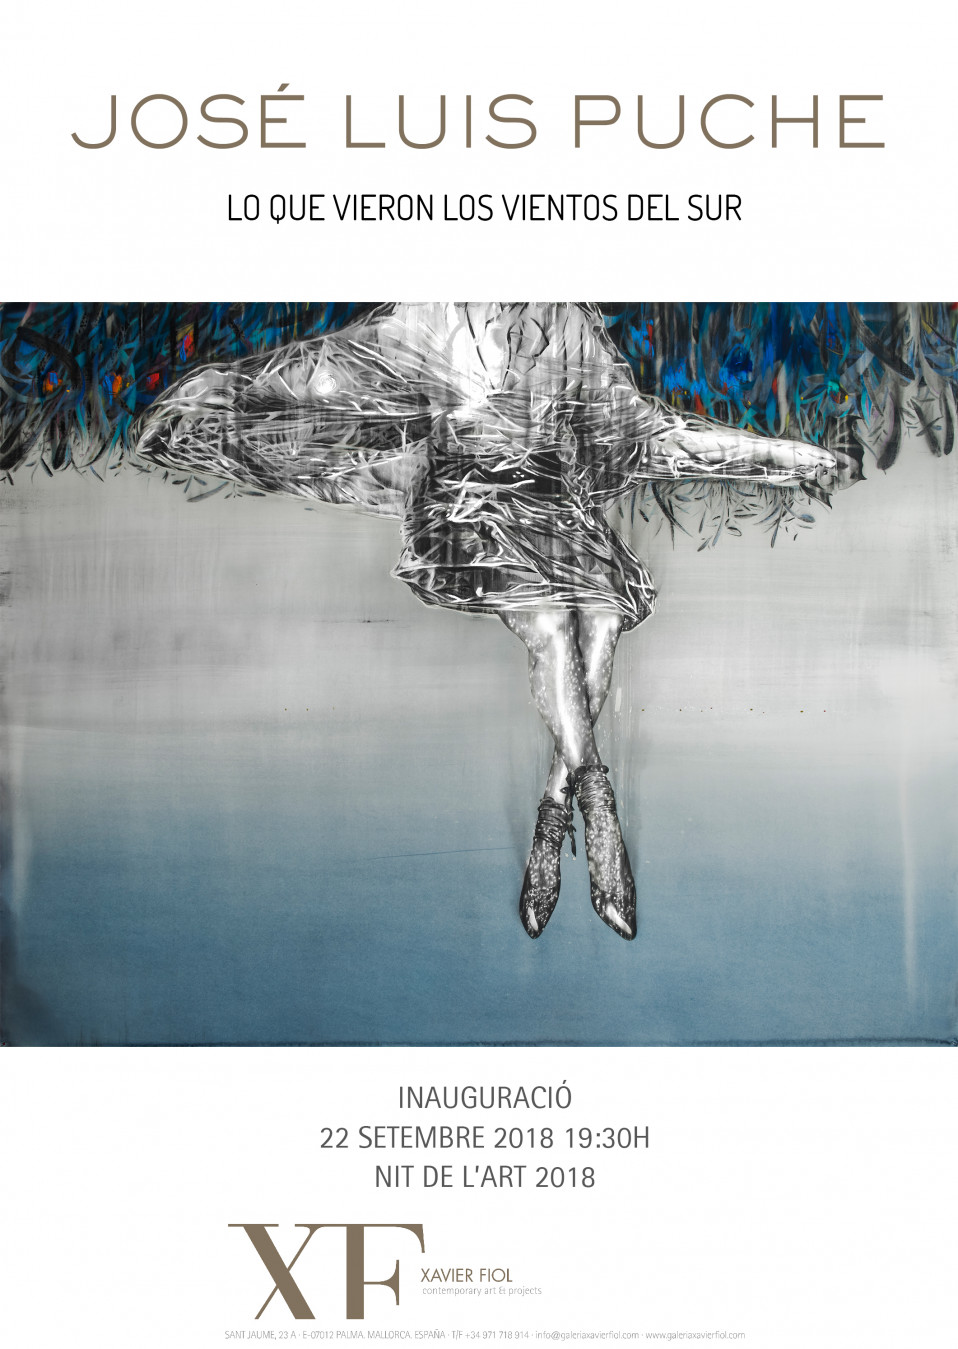 Montaje de la exposición «Lo que vieron los vientos del sur» JOSÉ LUIS PUCHE. Inauguración 22/09/2018 20:00h. Nit de l’Art 2018.